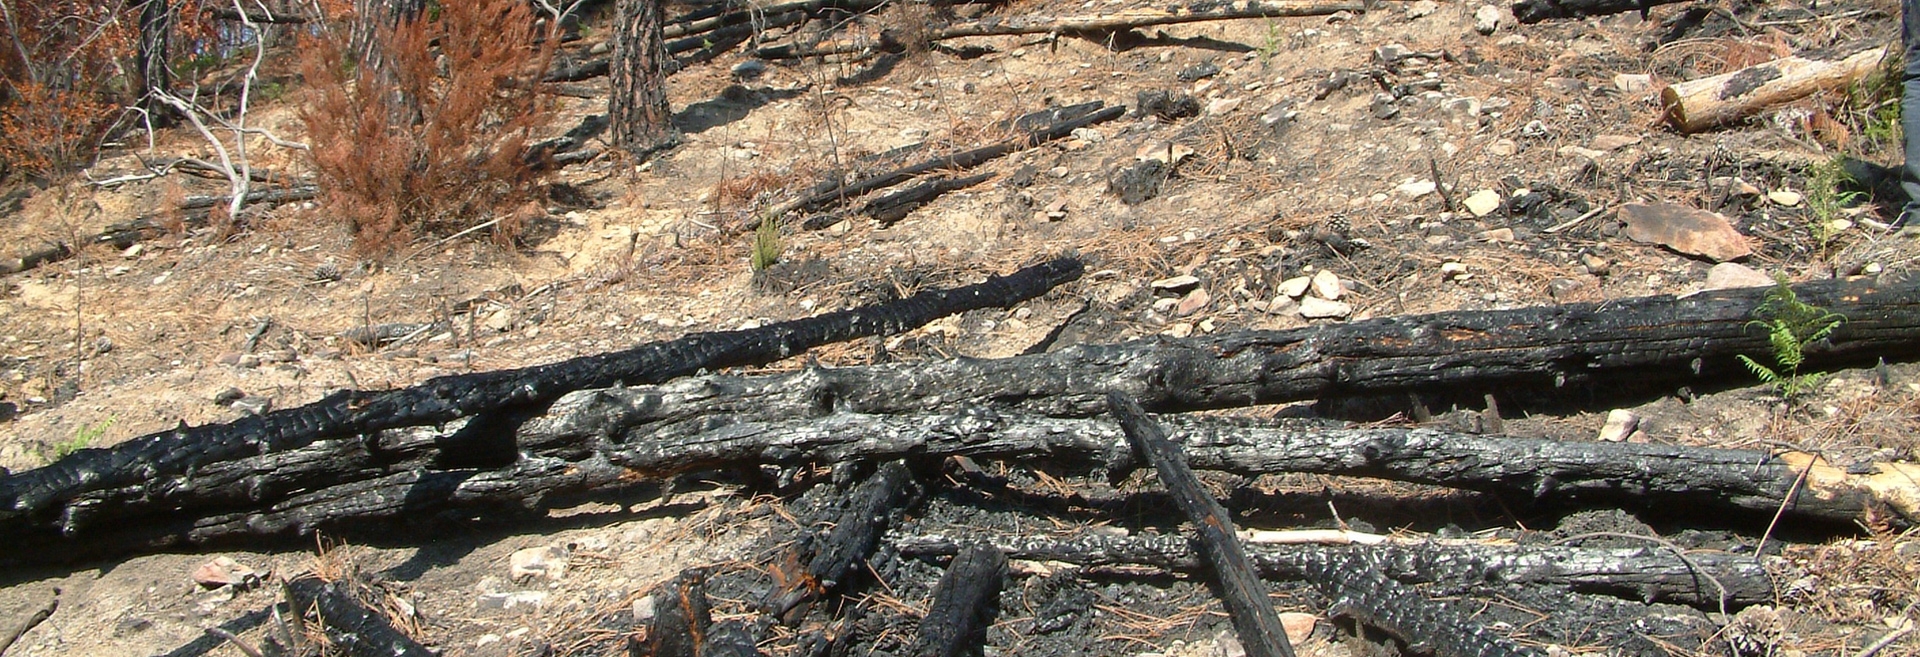 SE vuoi mitigare l’impatto degli incendi boschivi